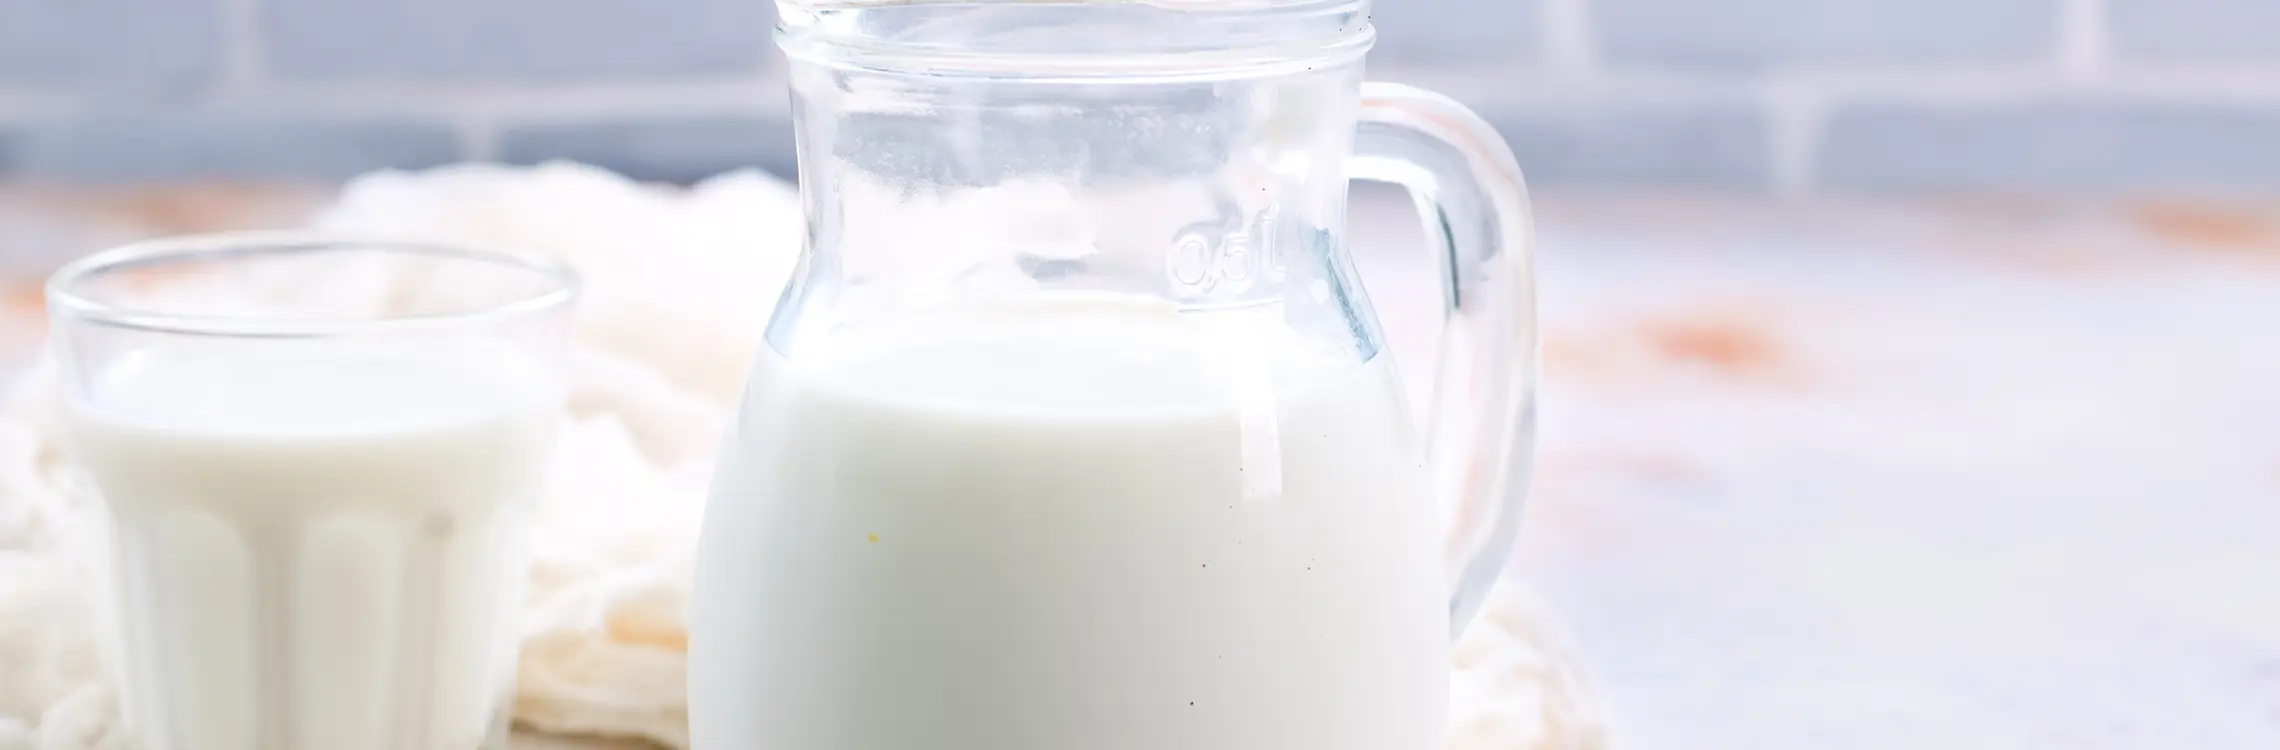 Verursacht Milch wirklich Hautprobleme?